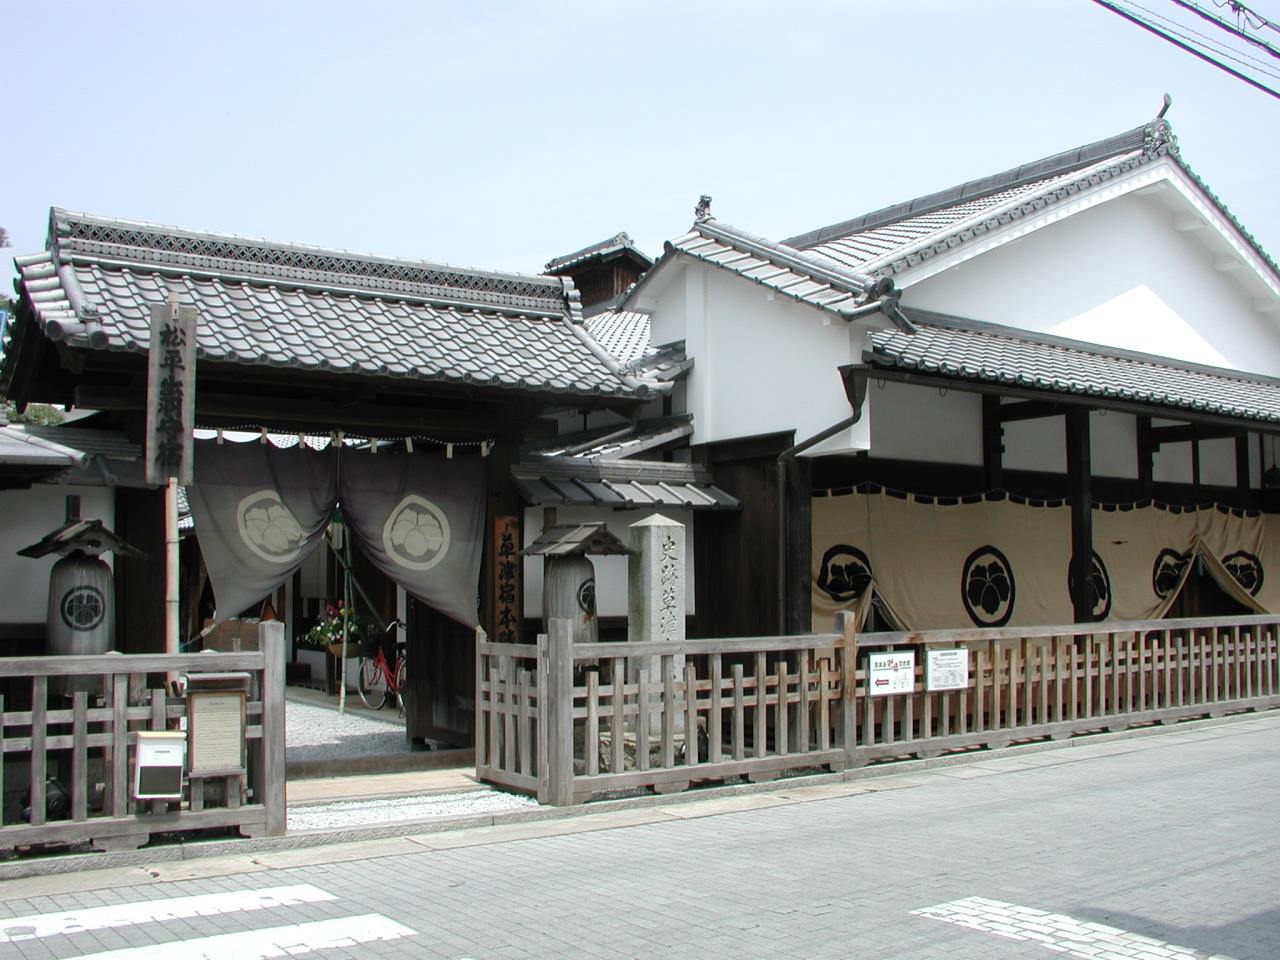 Remains of the Kusatsu-juku Honjin